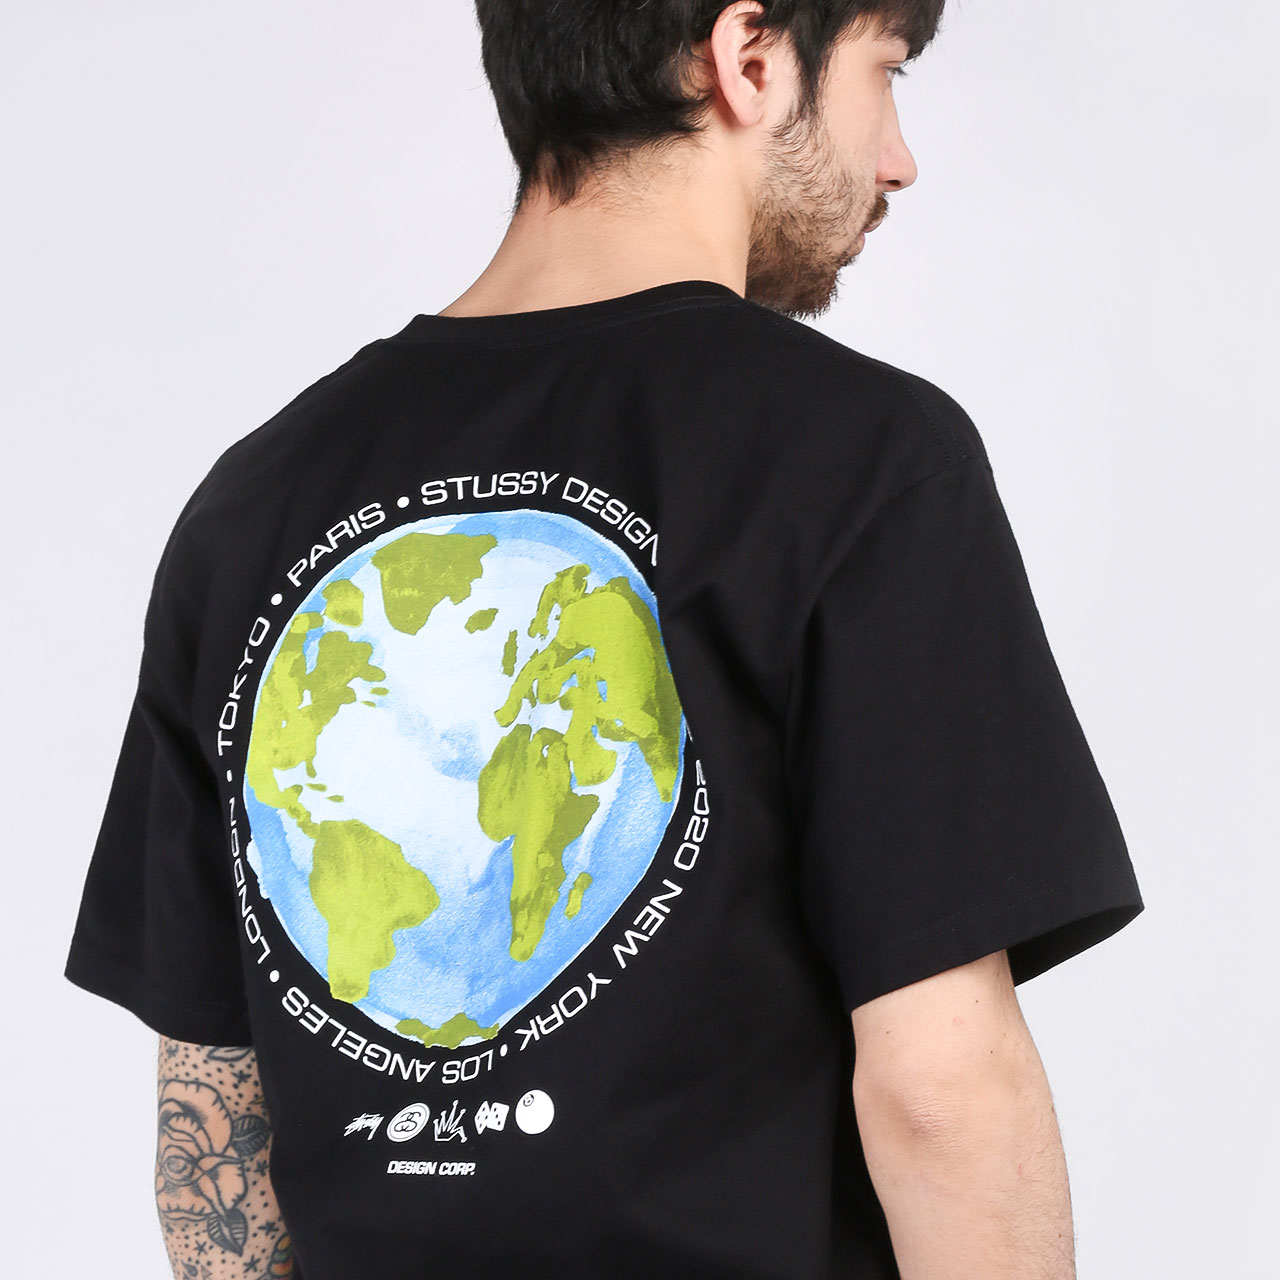 мужская черная футболка Stussy T-SHIRT GLOBAL DESIGN 1904506-black - цена, описание, фото 2